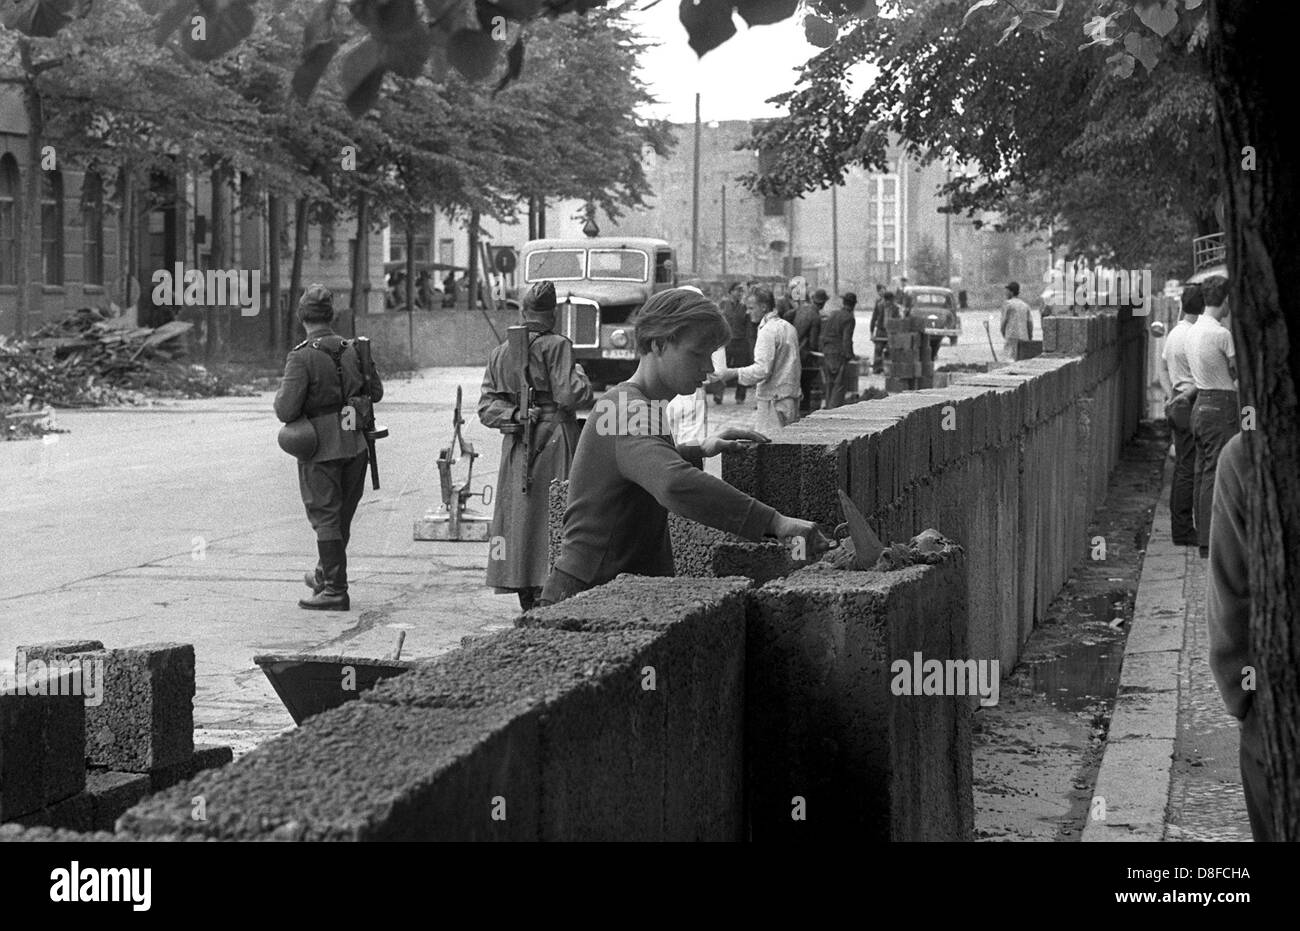 Les travailleurs de la construction de Berlin est d'étendre le Mur de Berlin à partir de la "Potsdamer Platz", dans le sens de 'Lindenstrasse' street sous la supervision d'agents armés de la police de Berlin, RDA, 18 août 1961. Le mur est construit entre deux et cinq mètres à l'intérieur de la ligne de démarcation des secteurs dans Berlin Est. Ici, les frontières des secteurs courent le long de la chambre les façades. Grit et dalles de béton, briques creuses qui ont été initialement conçus pour la construction de maisons à Berlin Est, sont utilisés pour la construction. Les travailleurs de la construction sont payés 1,28 marks d'une heure. Dans Banque D'Images